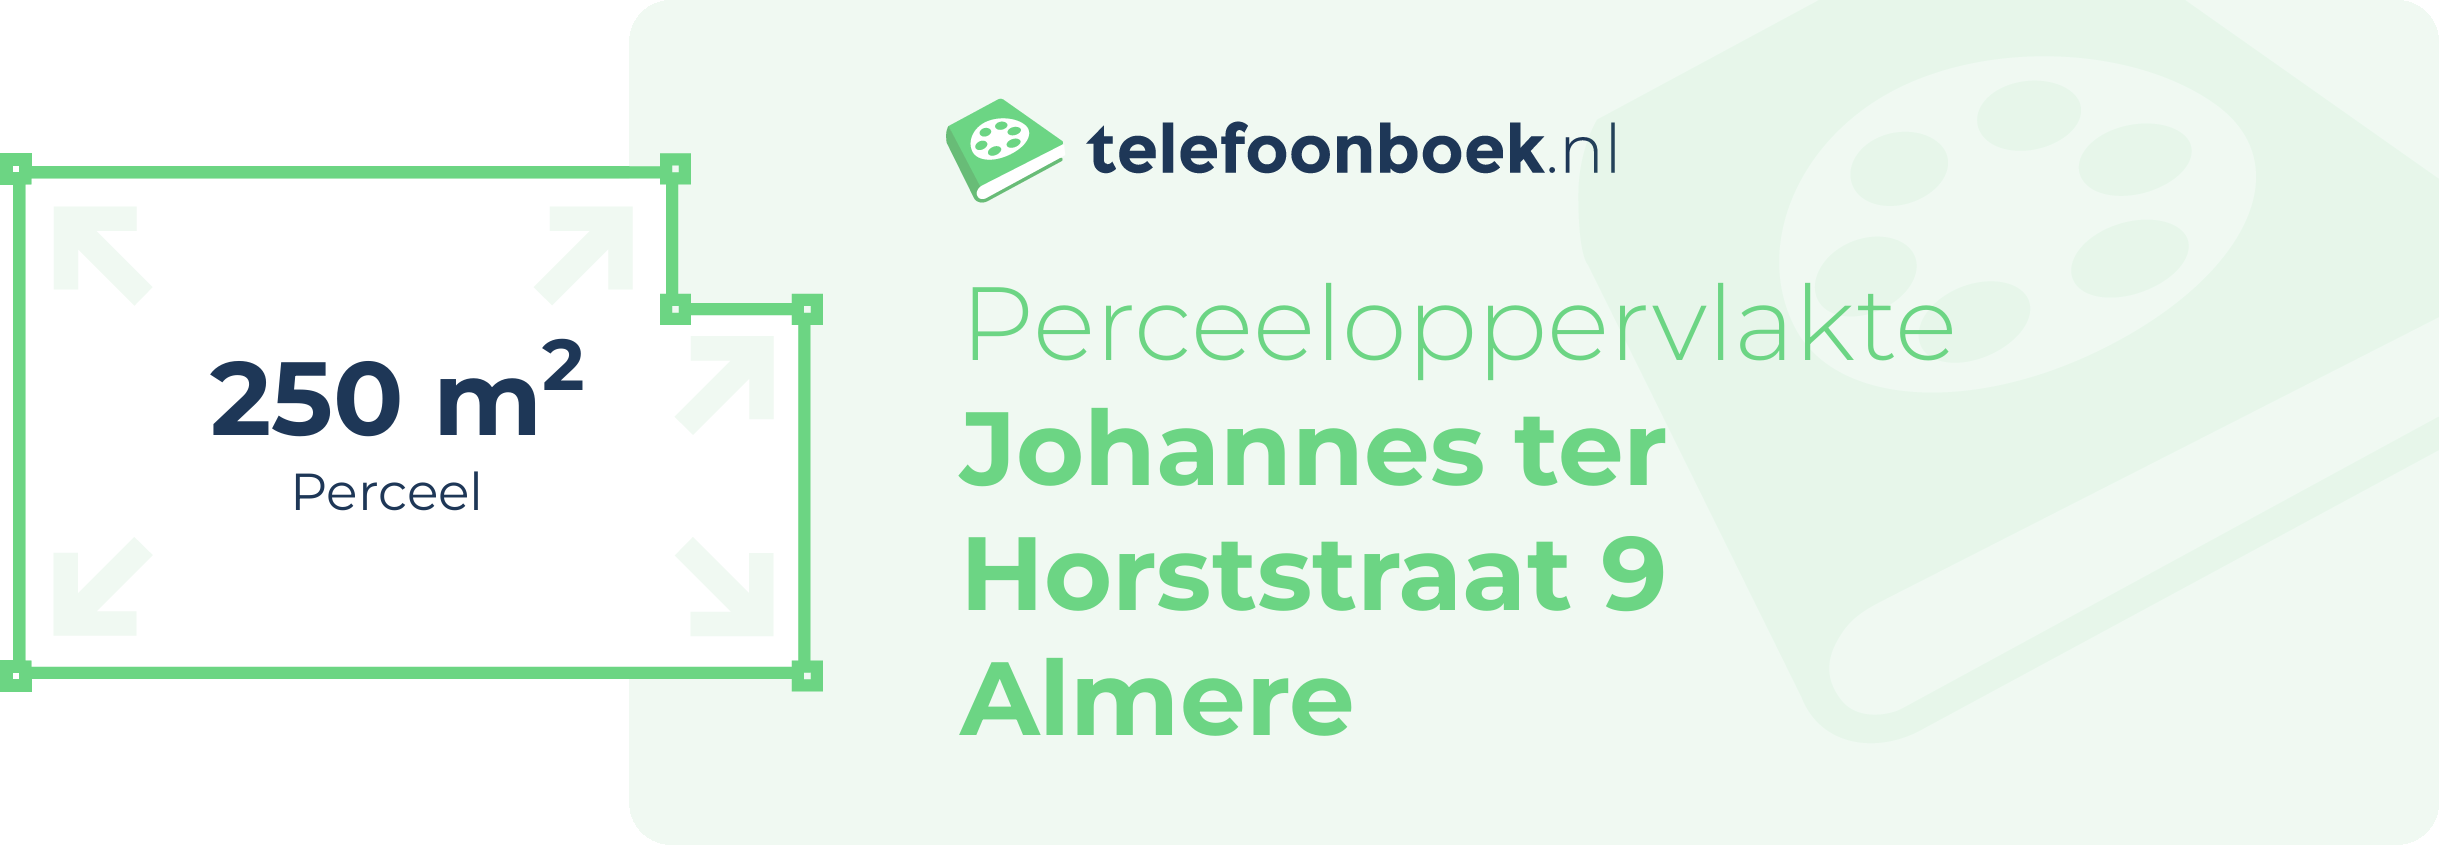 Perceeloppervlakte Johannes Ter Horststraat 9 Almere